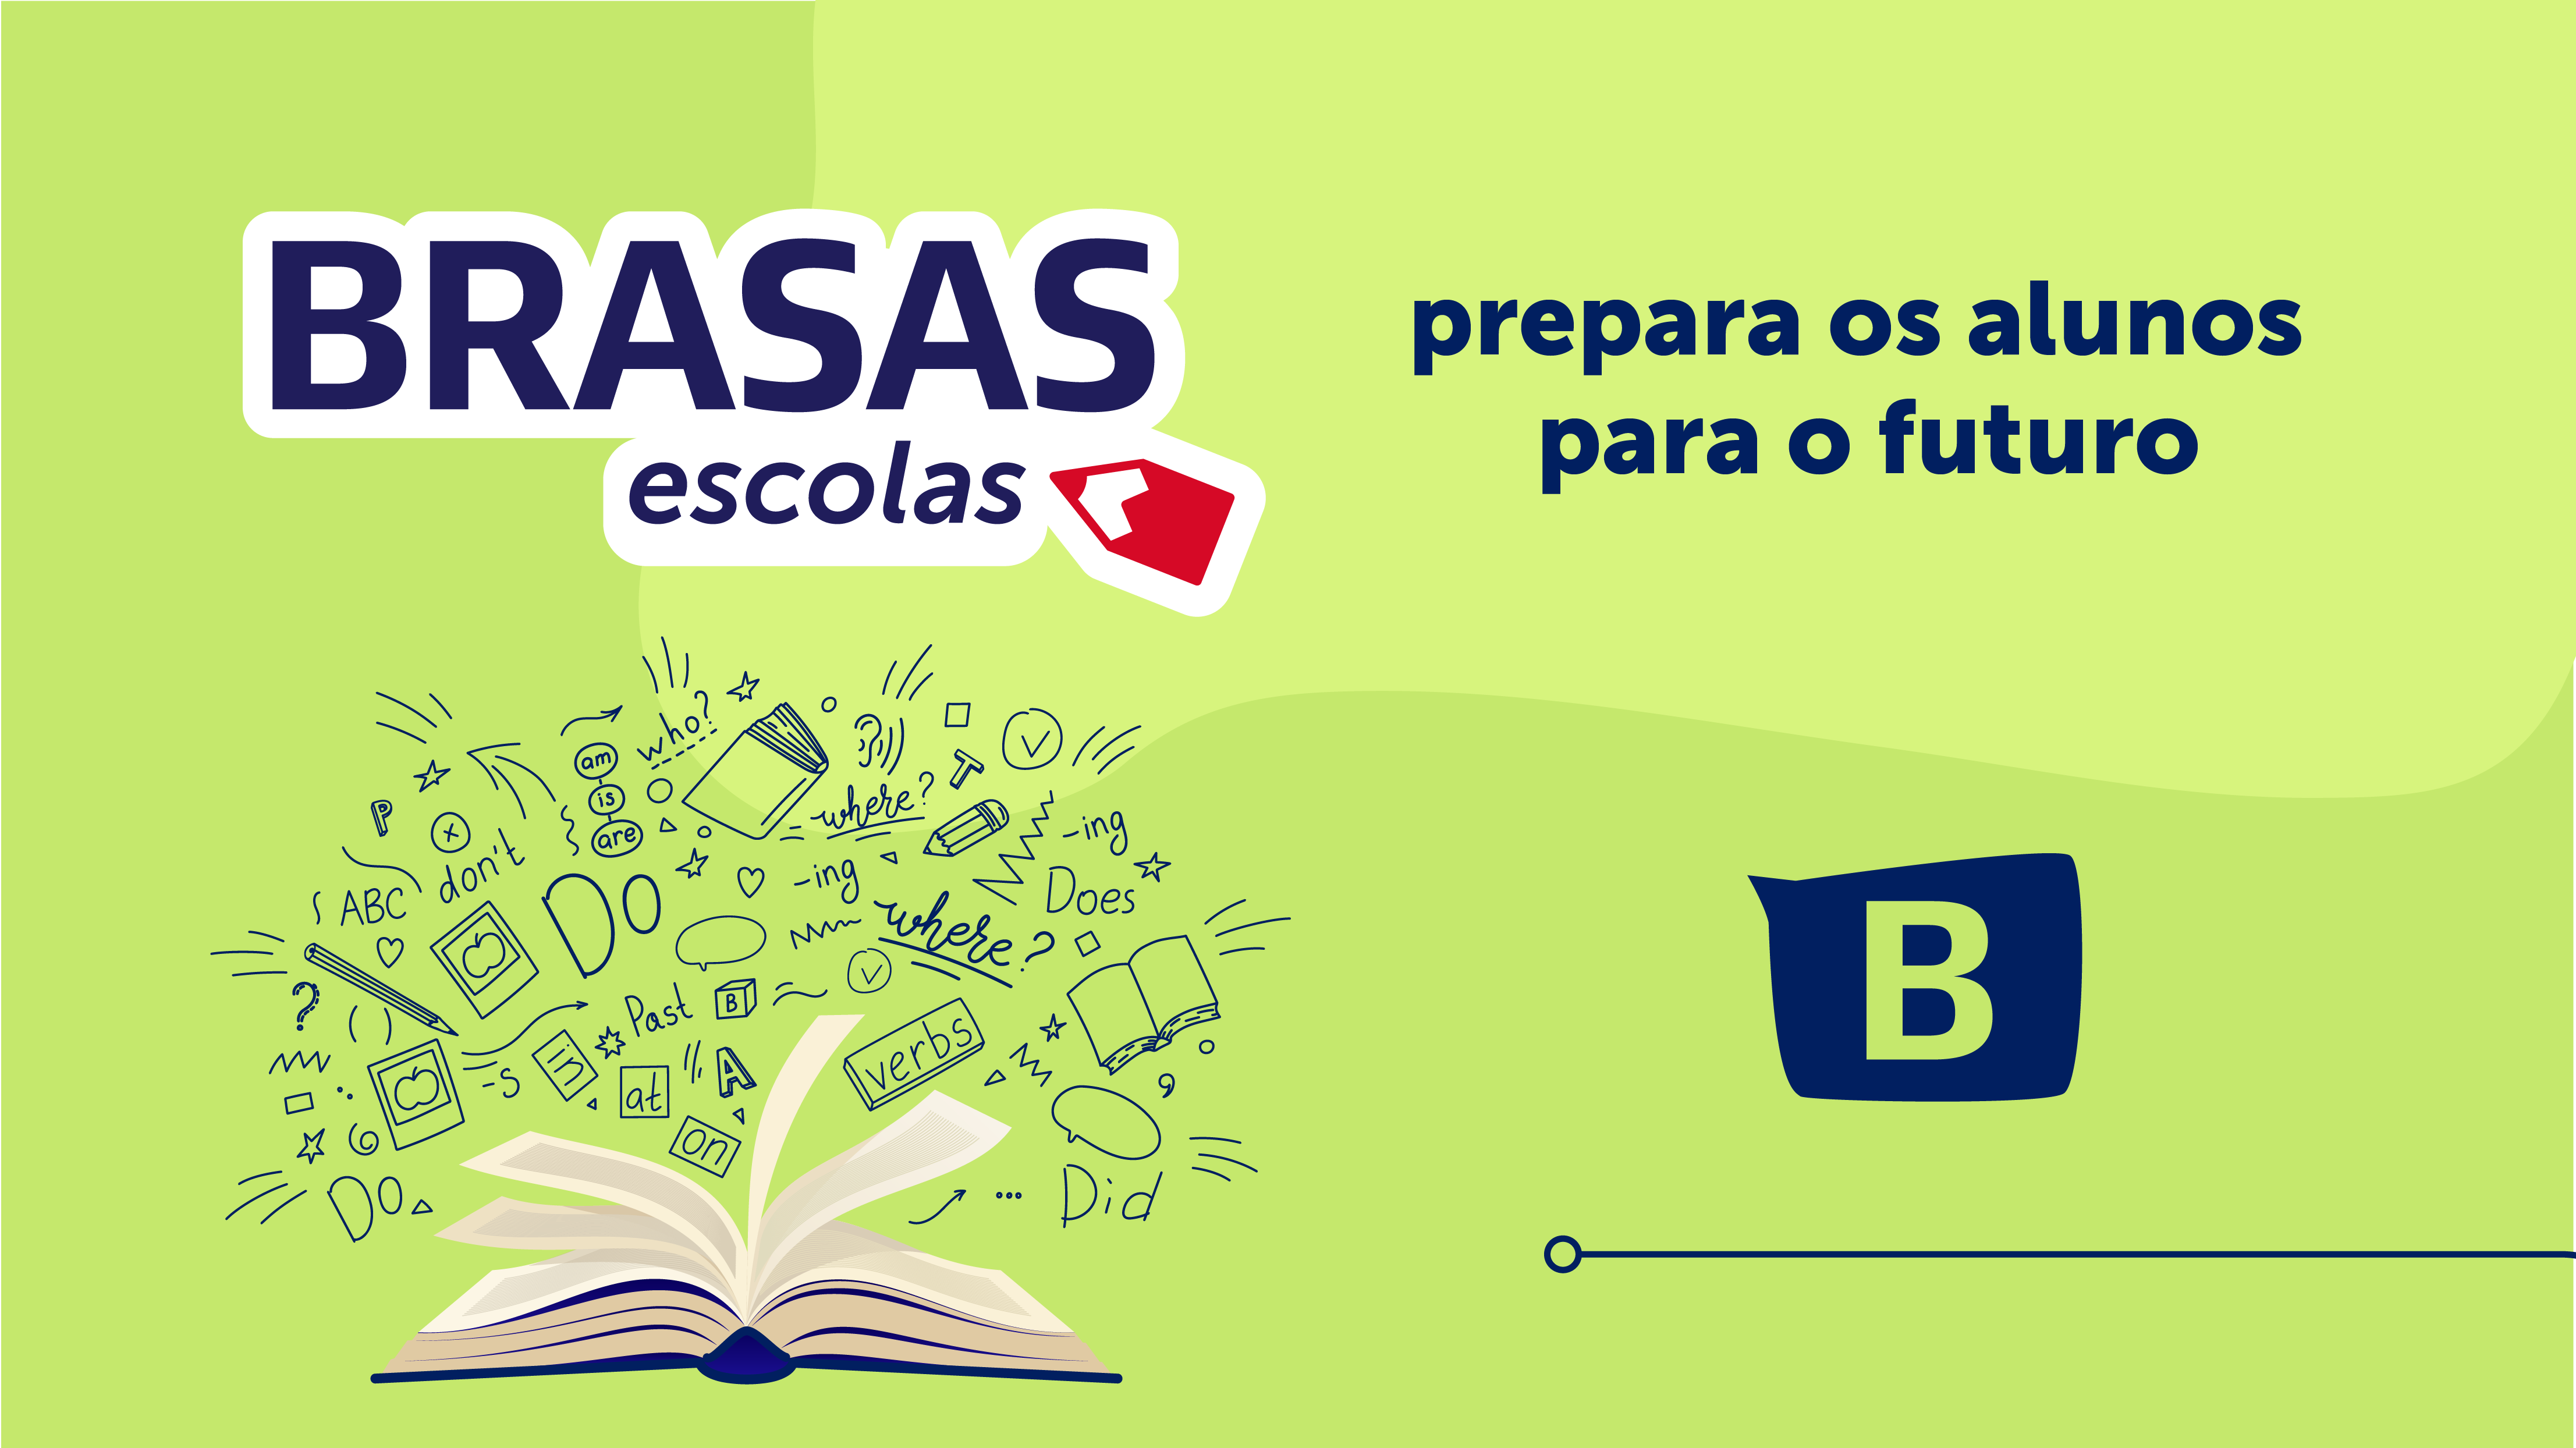 O BRASAS Escolas prepara os alunos para o futuro 5